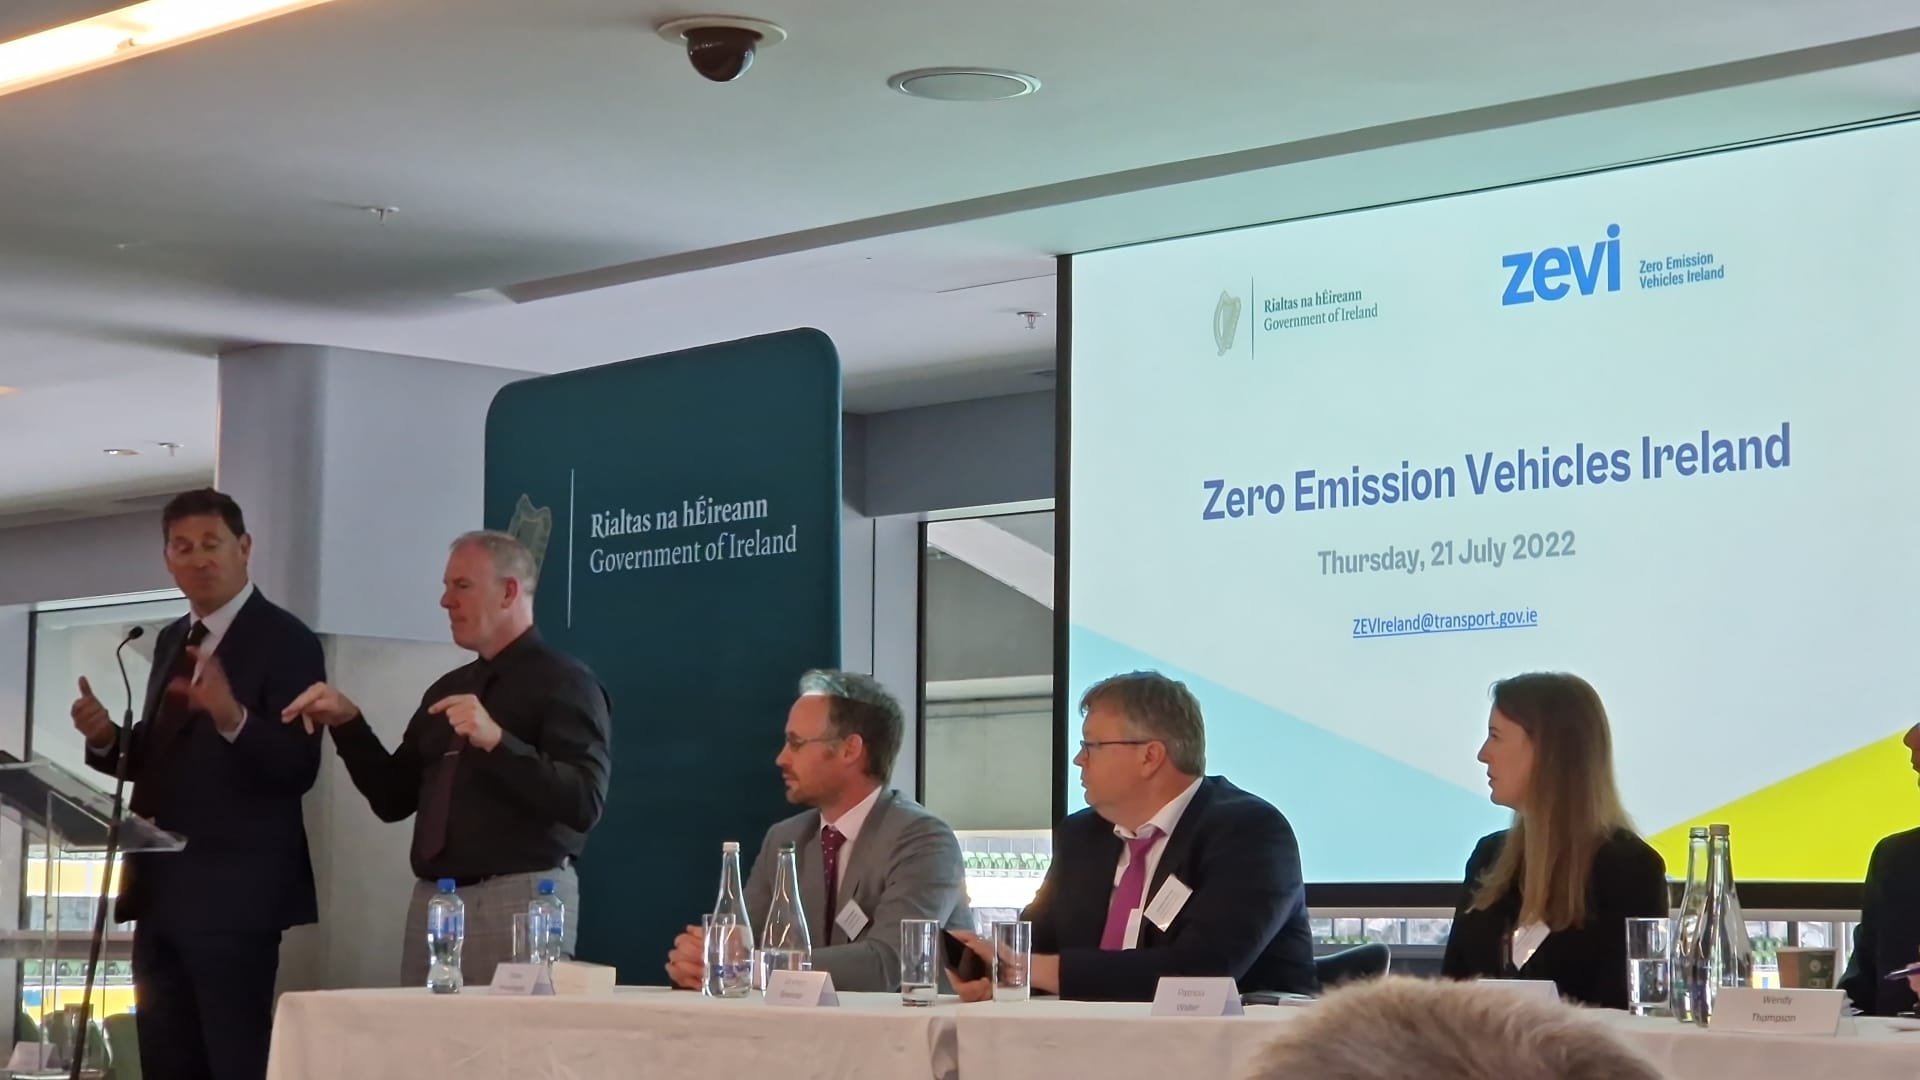 Minister Eamon Ryan T.D. at launch of ZEVI in Aviva Stadium, Dublin